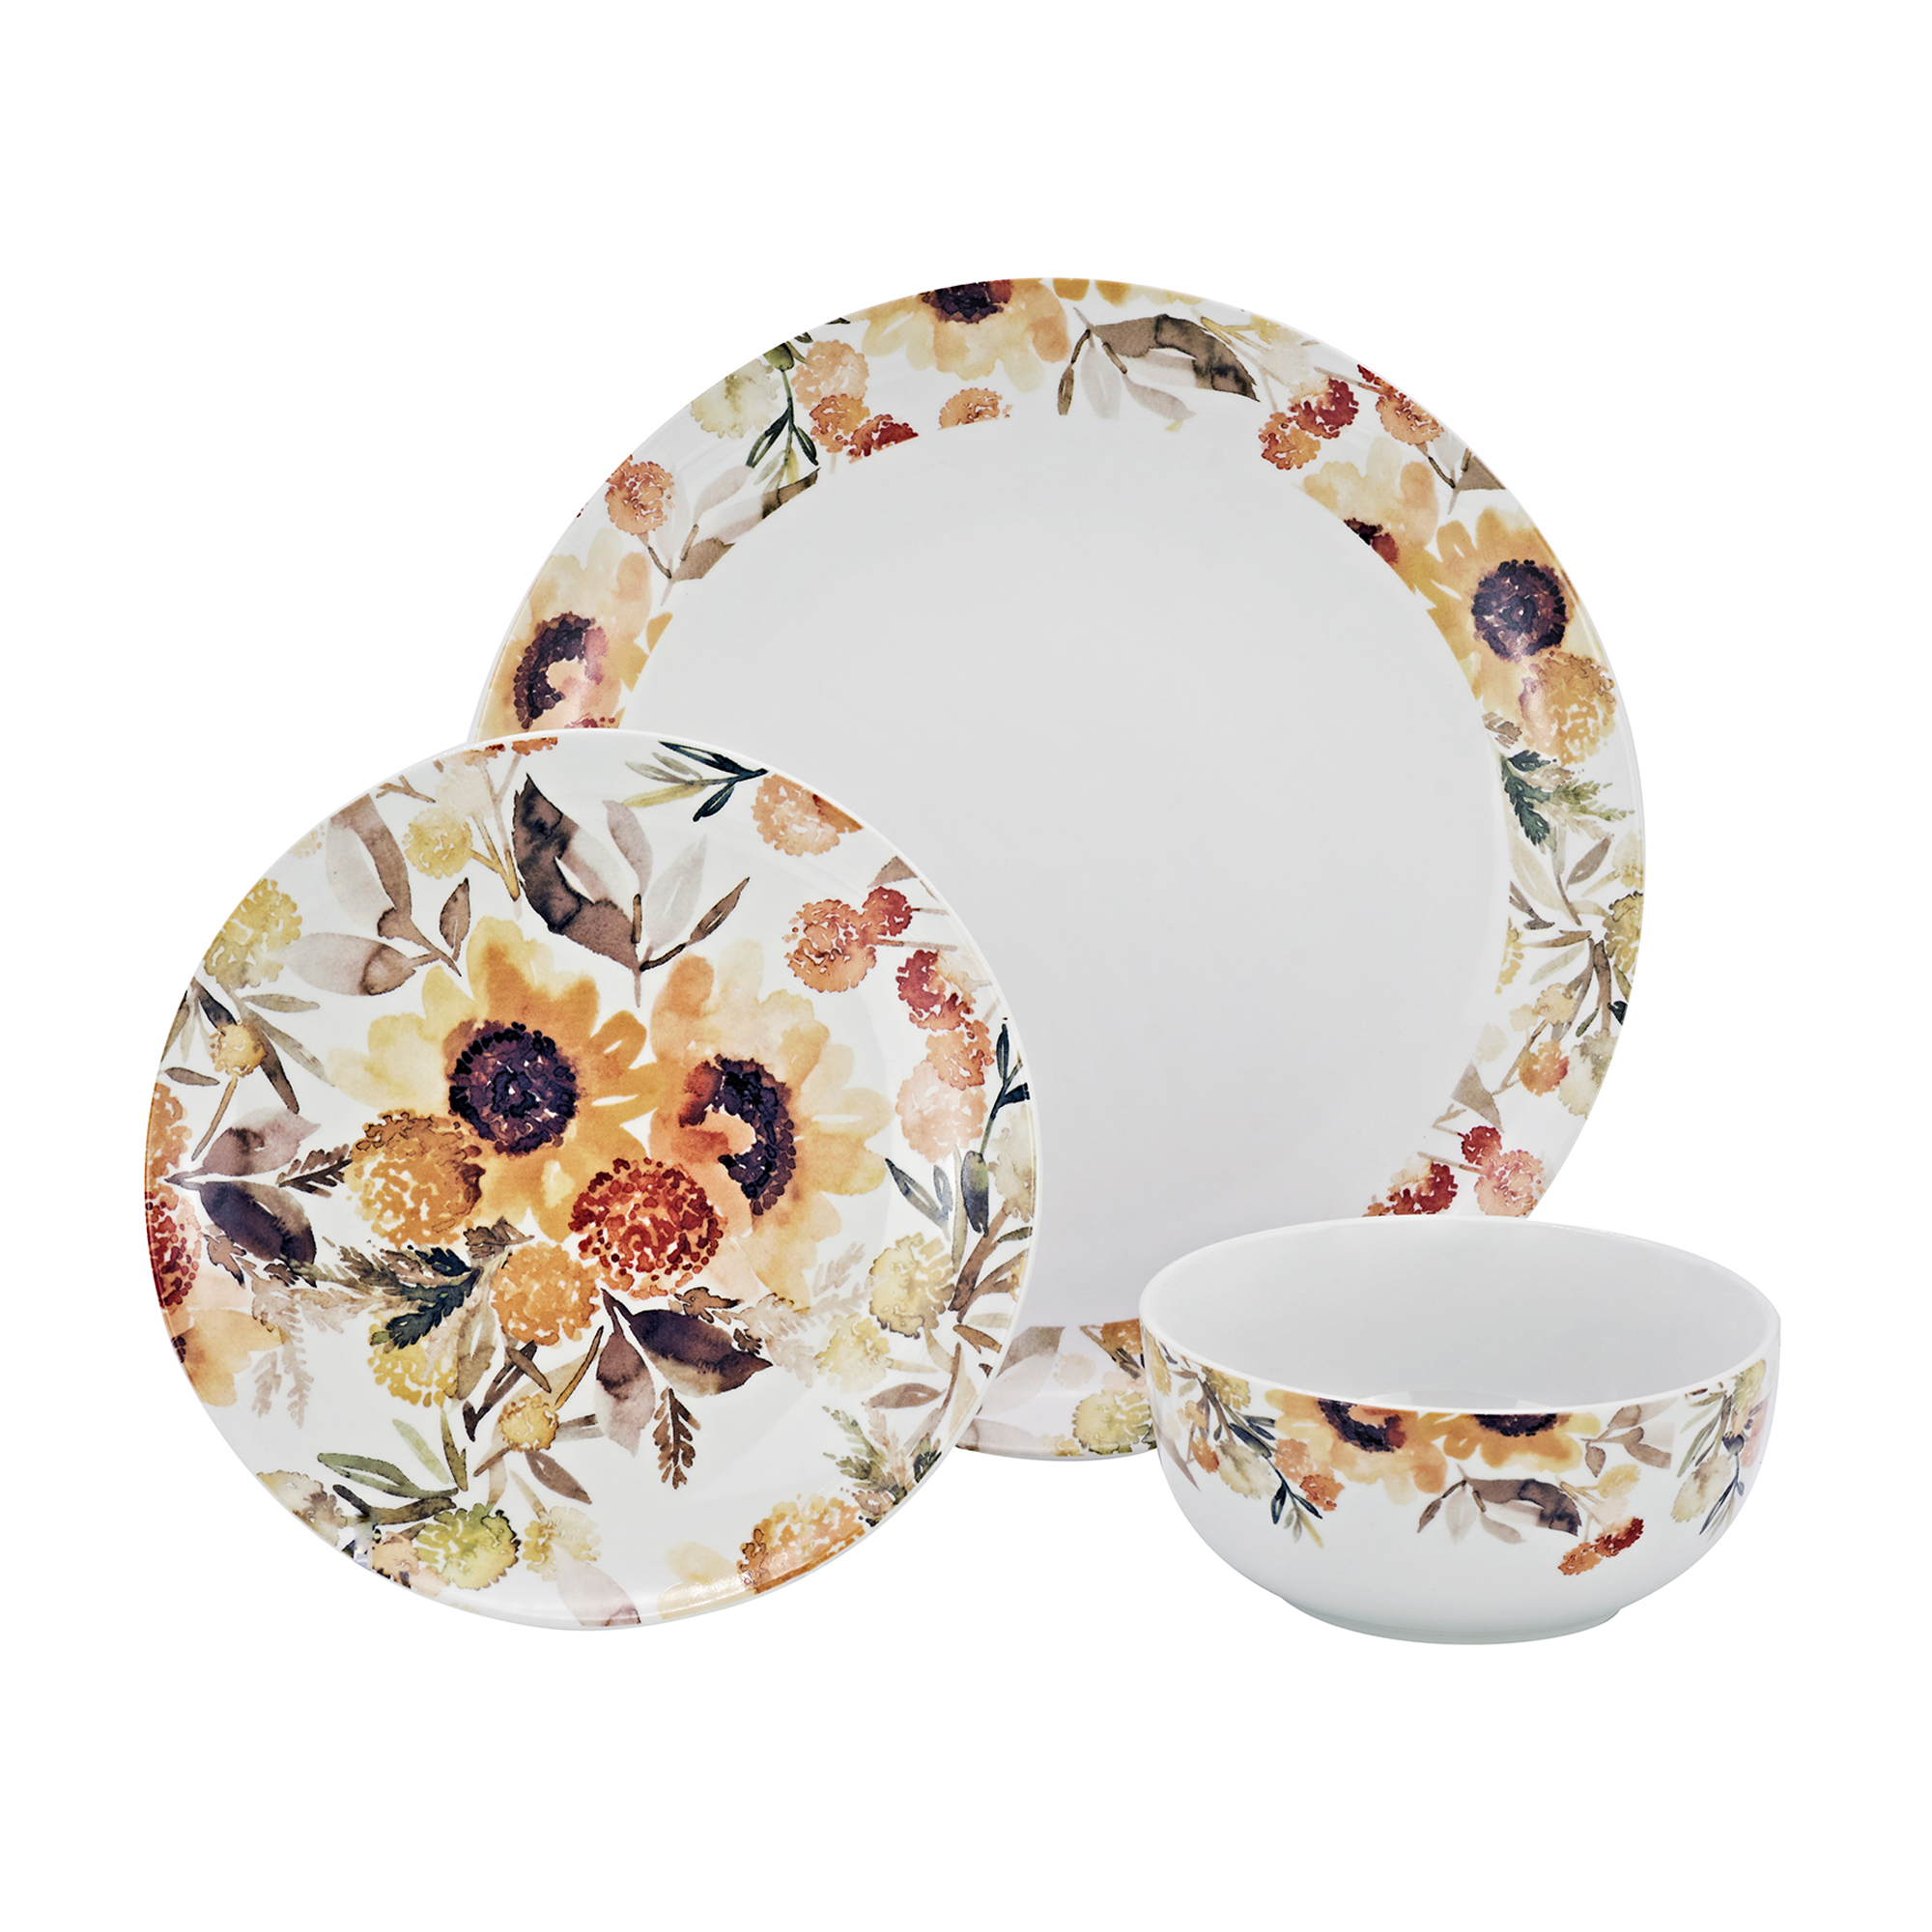 Godinger 12-pc. Service for 4 Sunflower Porcelain Dinnerware Set |  Ross-Simons